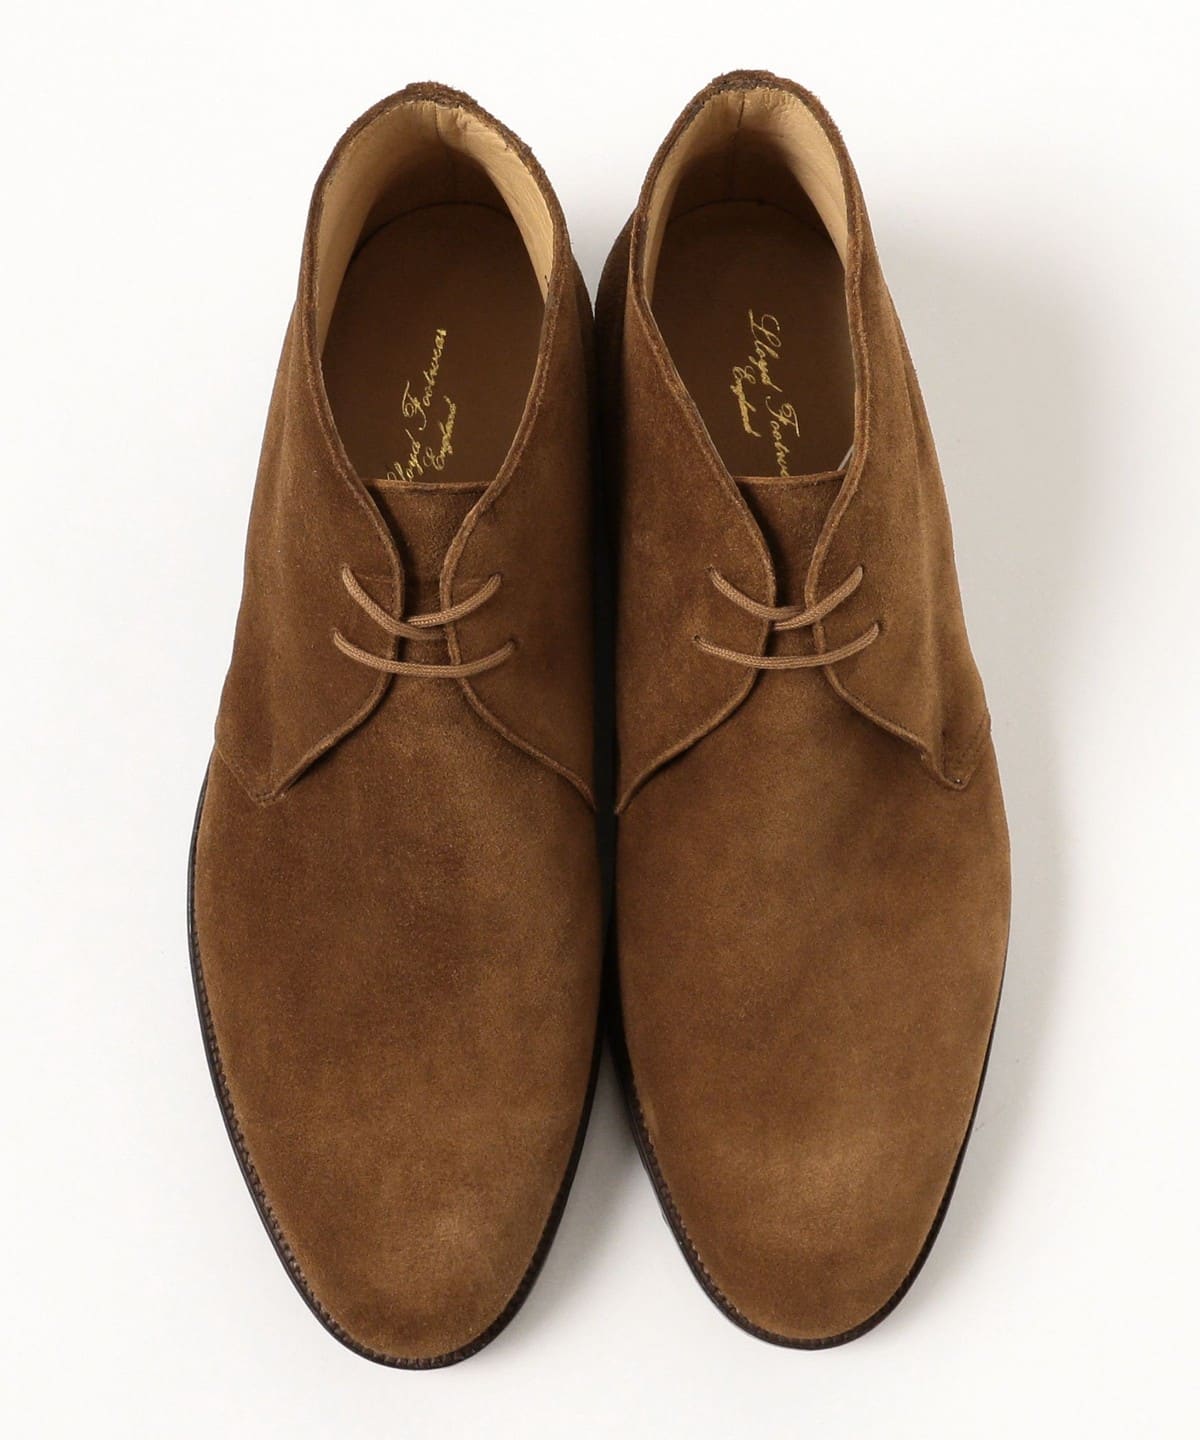 BEAMS F BEAMS Lloyd Footwear / MASTER LLOYD suede chukka boots 